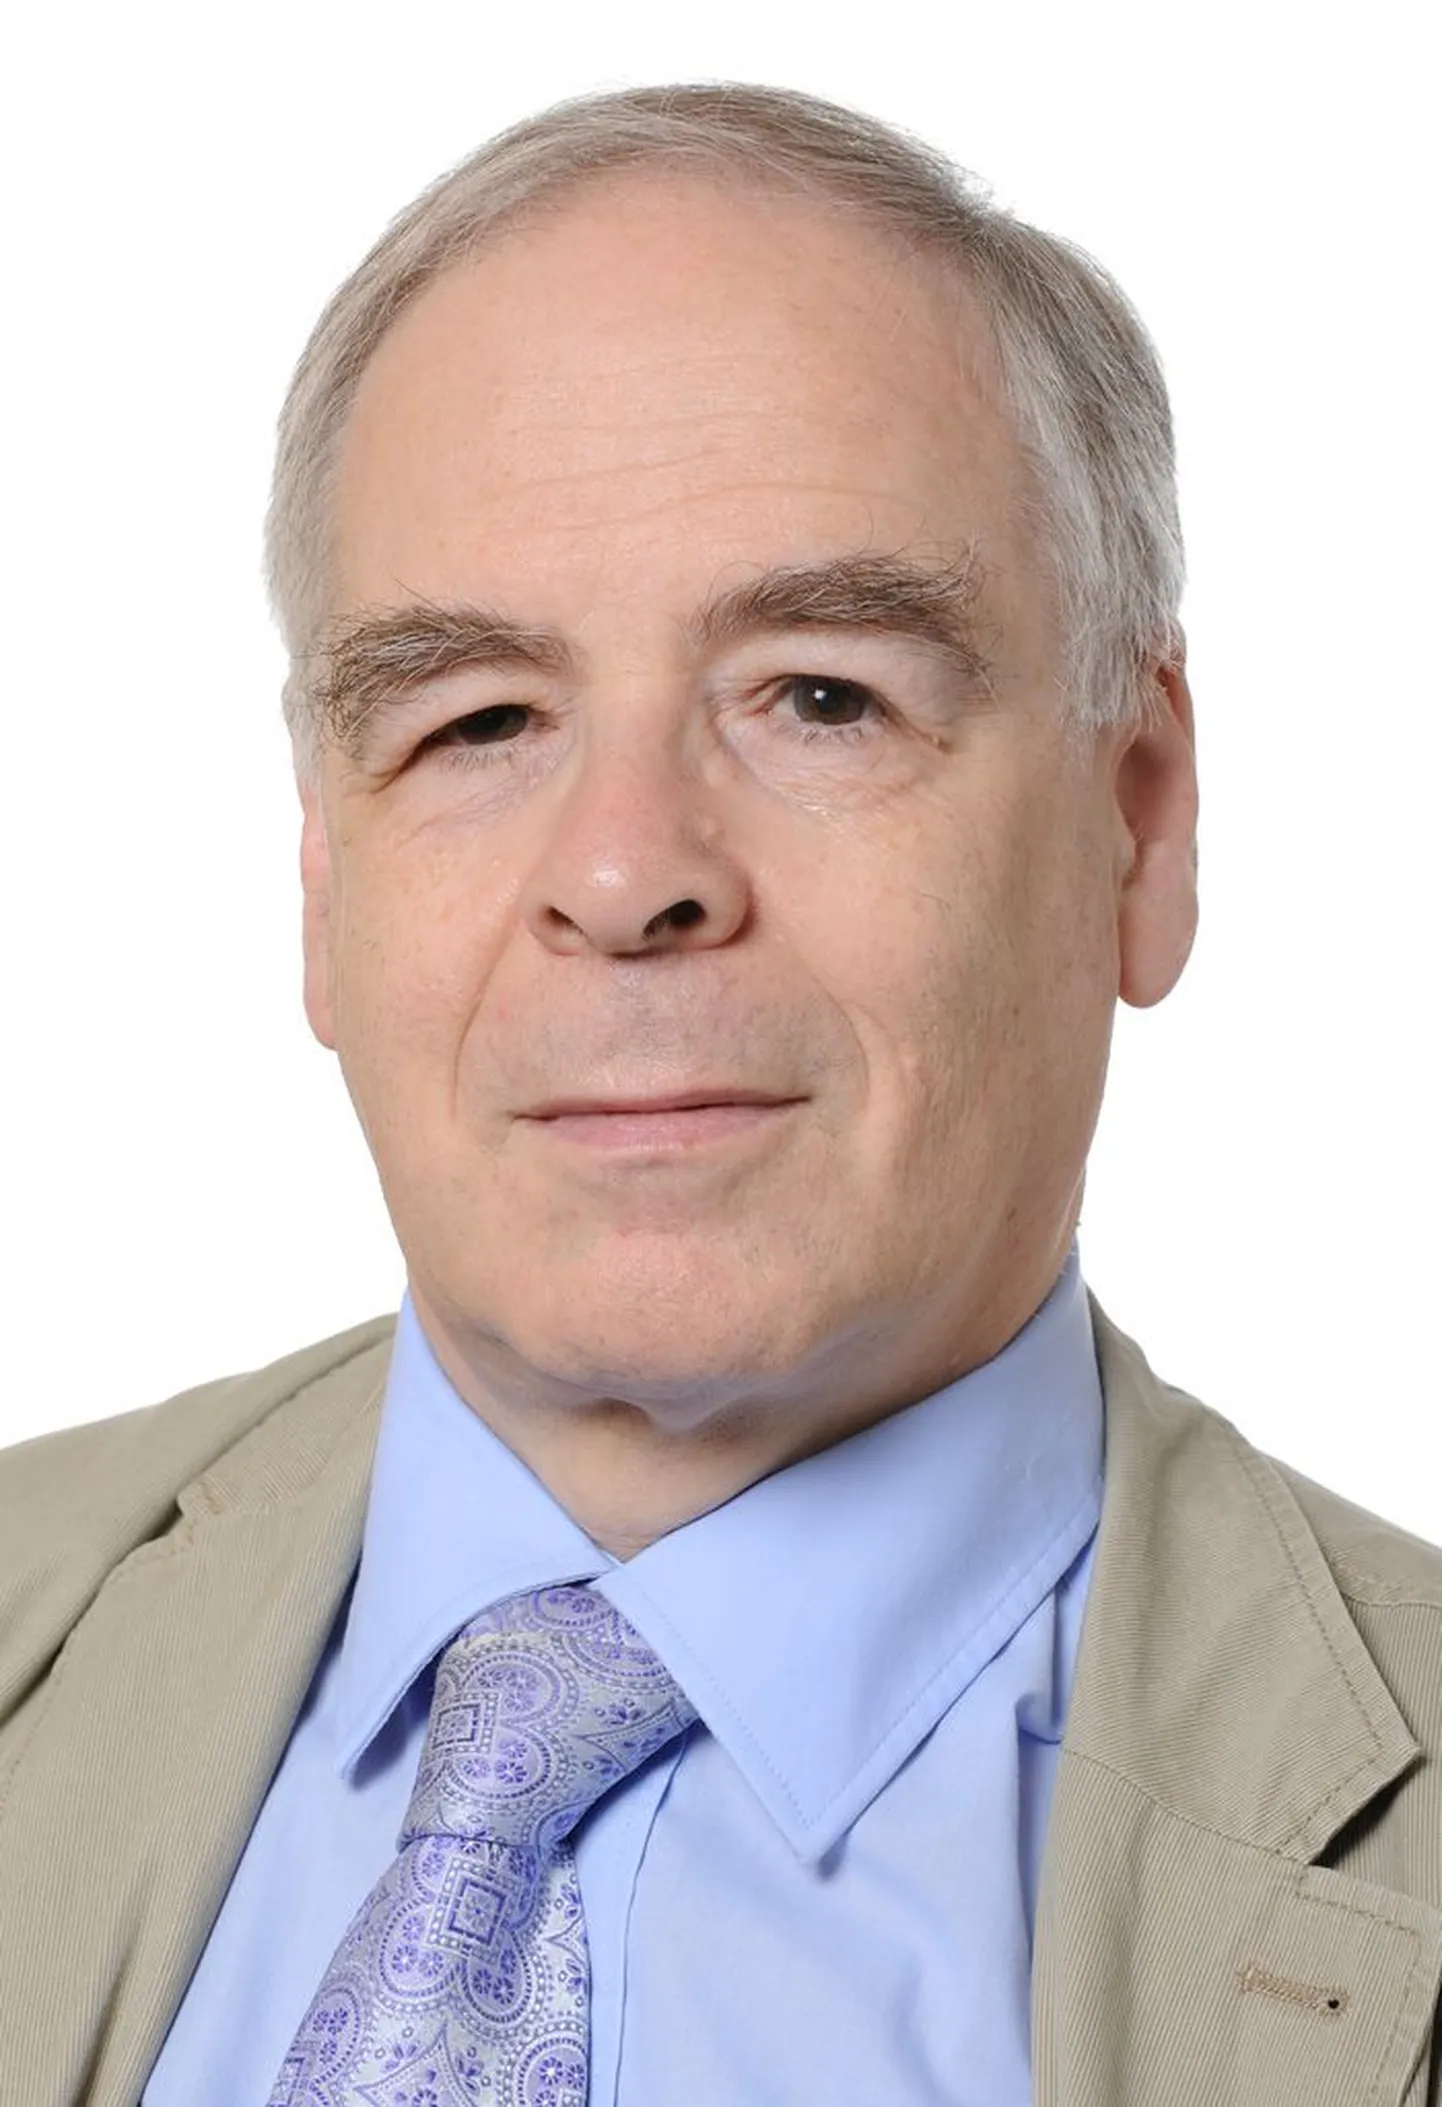 György Schöpflin
Fideszi eurosaadik